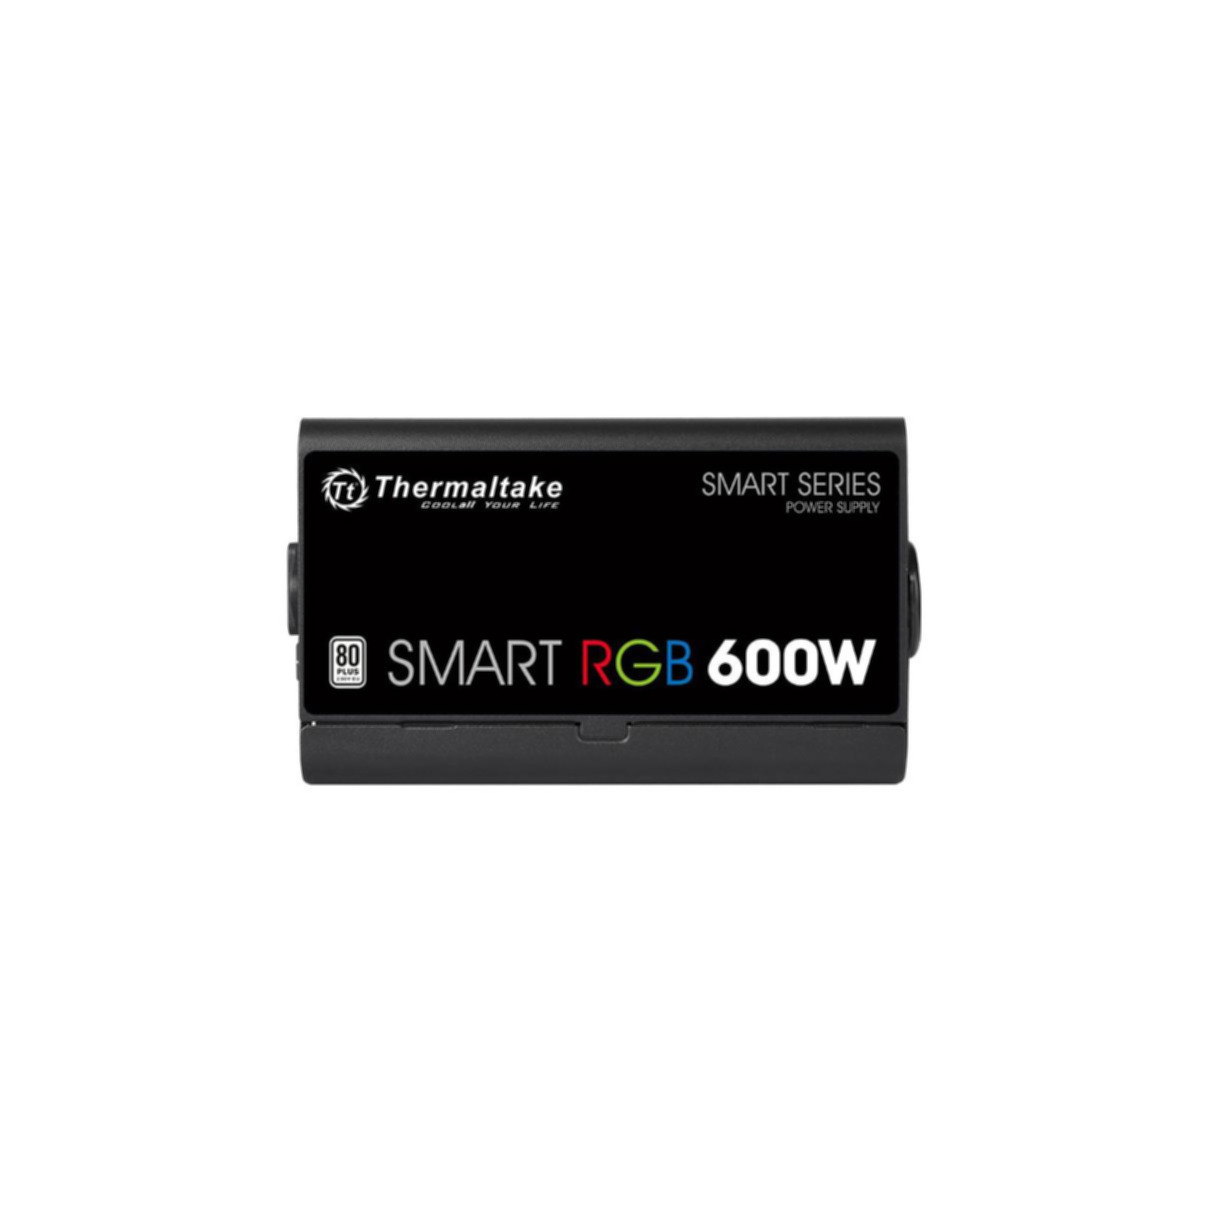 Smart Netzteil RGB 80+ 600 Standard THERMALTAKE PC Watt